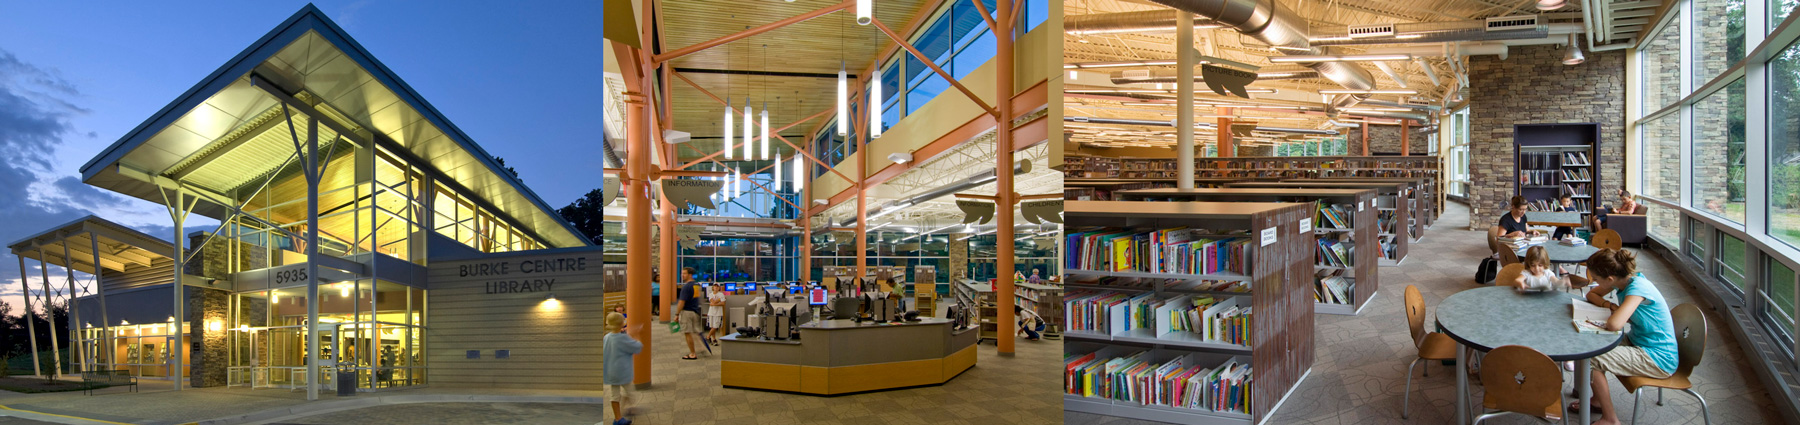 Burke Center Library